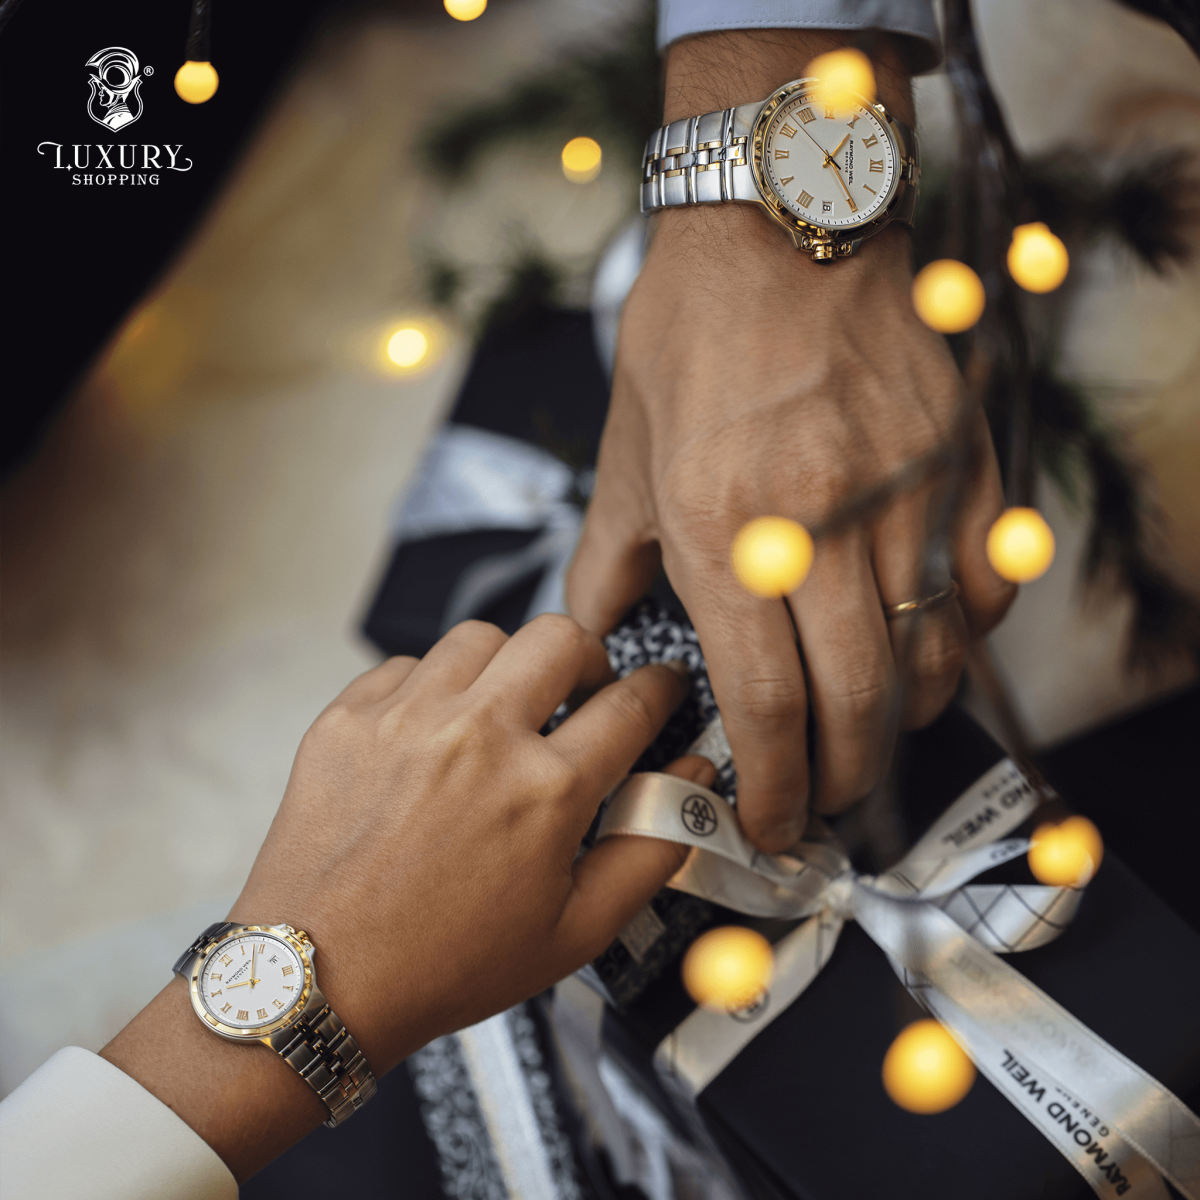 đồng hồ cao cấp chính hãng dưới 30 triệu đồng quà tặng giáng sinh 